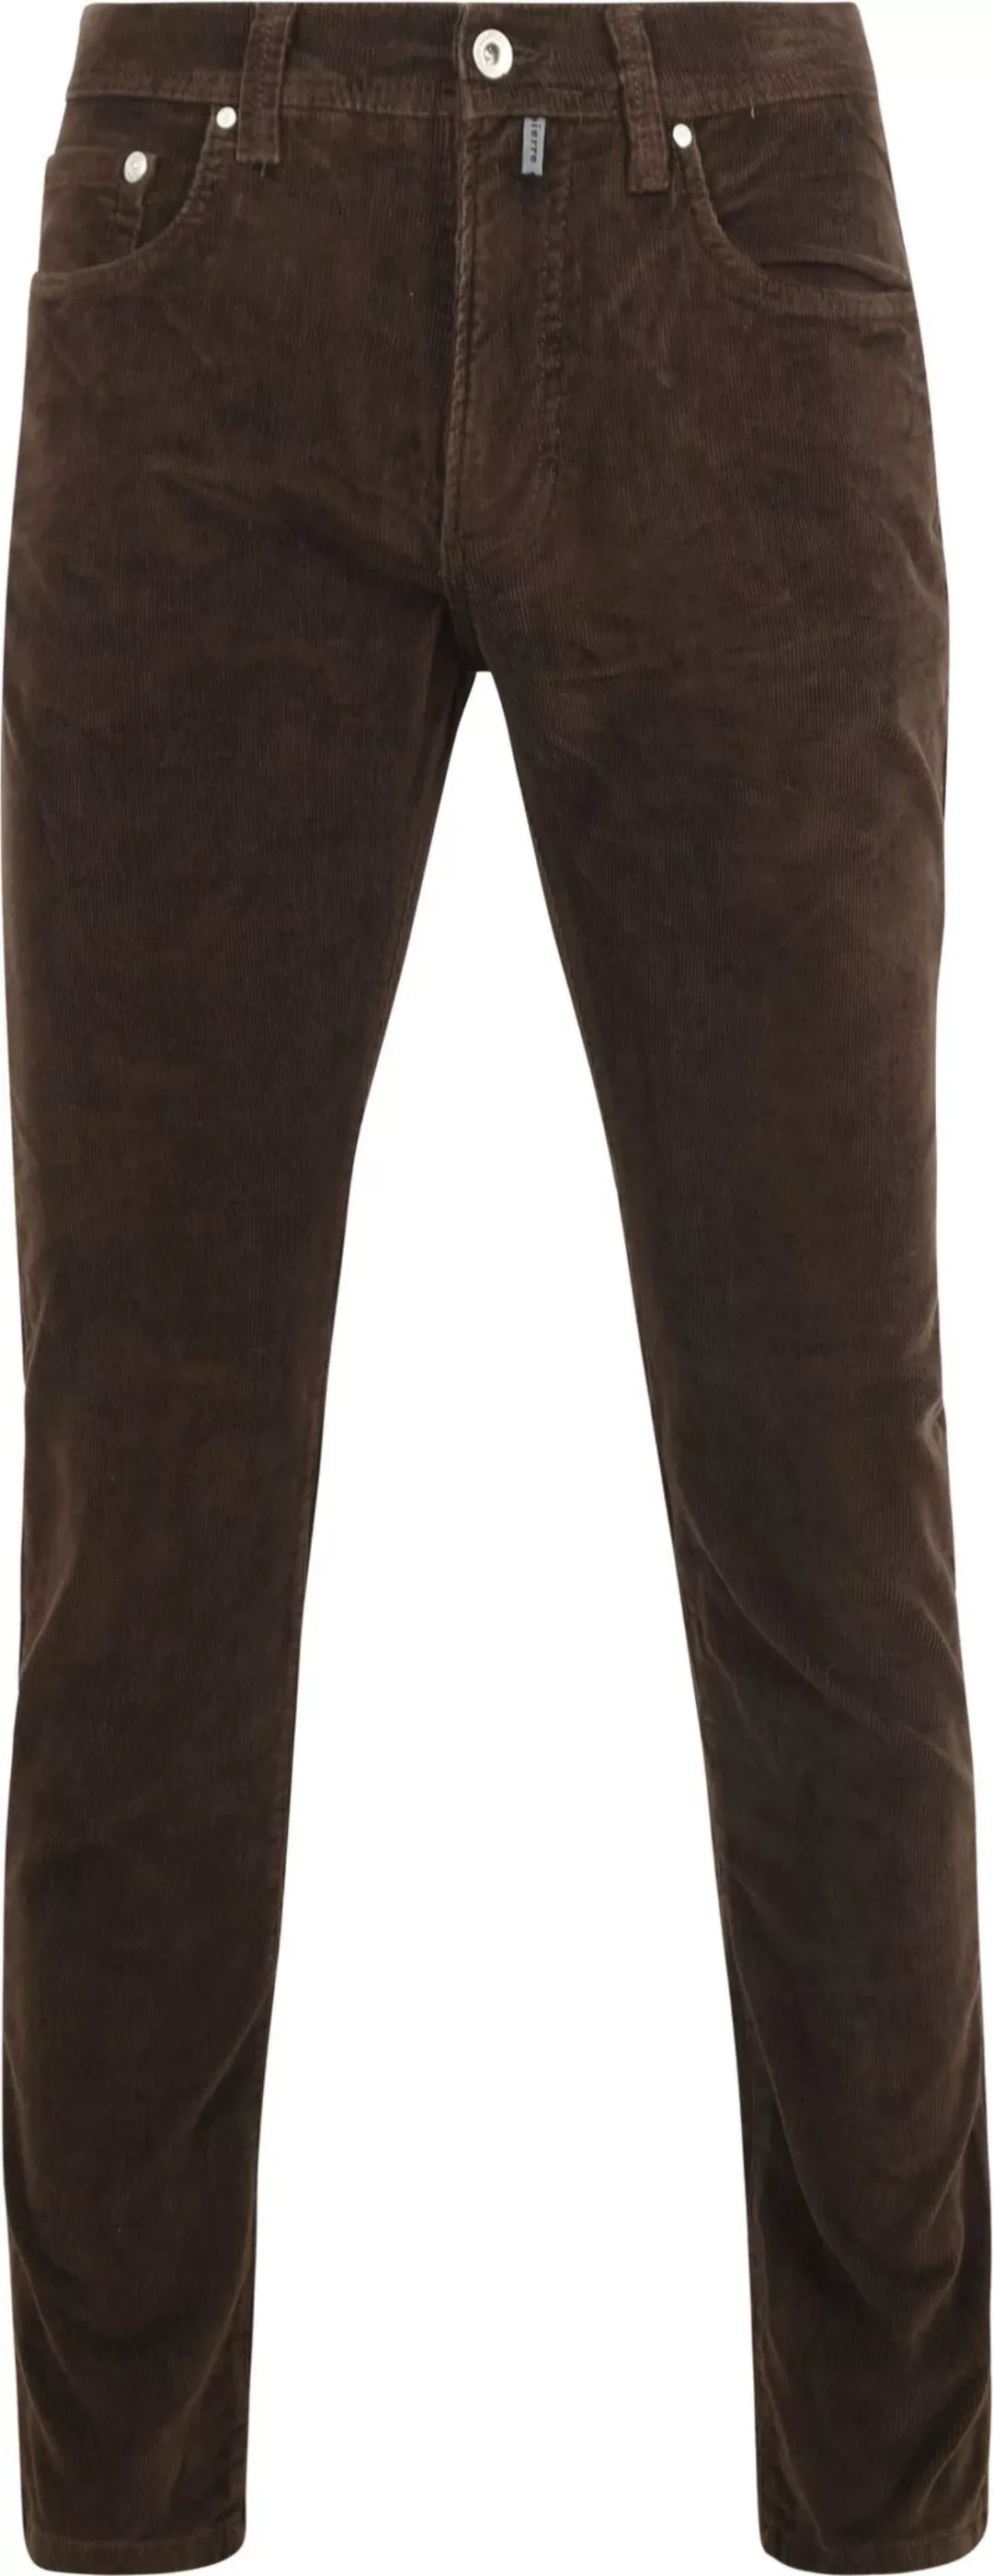 Pierre Cardin Trousers Lyon Future Flex Corduroy Braun - Größe W 31 - L 32 günstig online kaufen